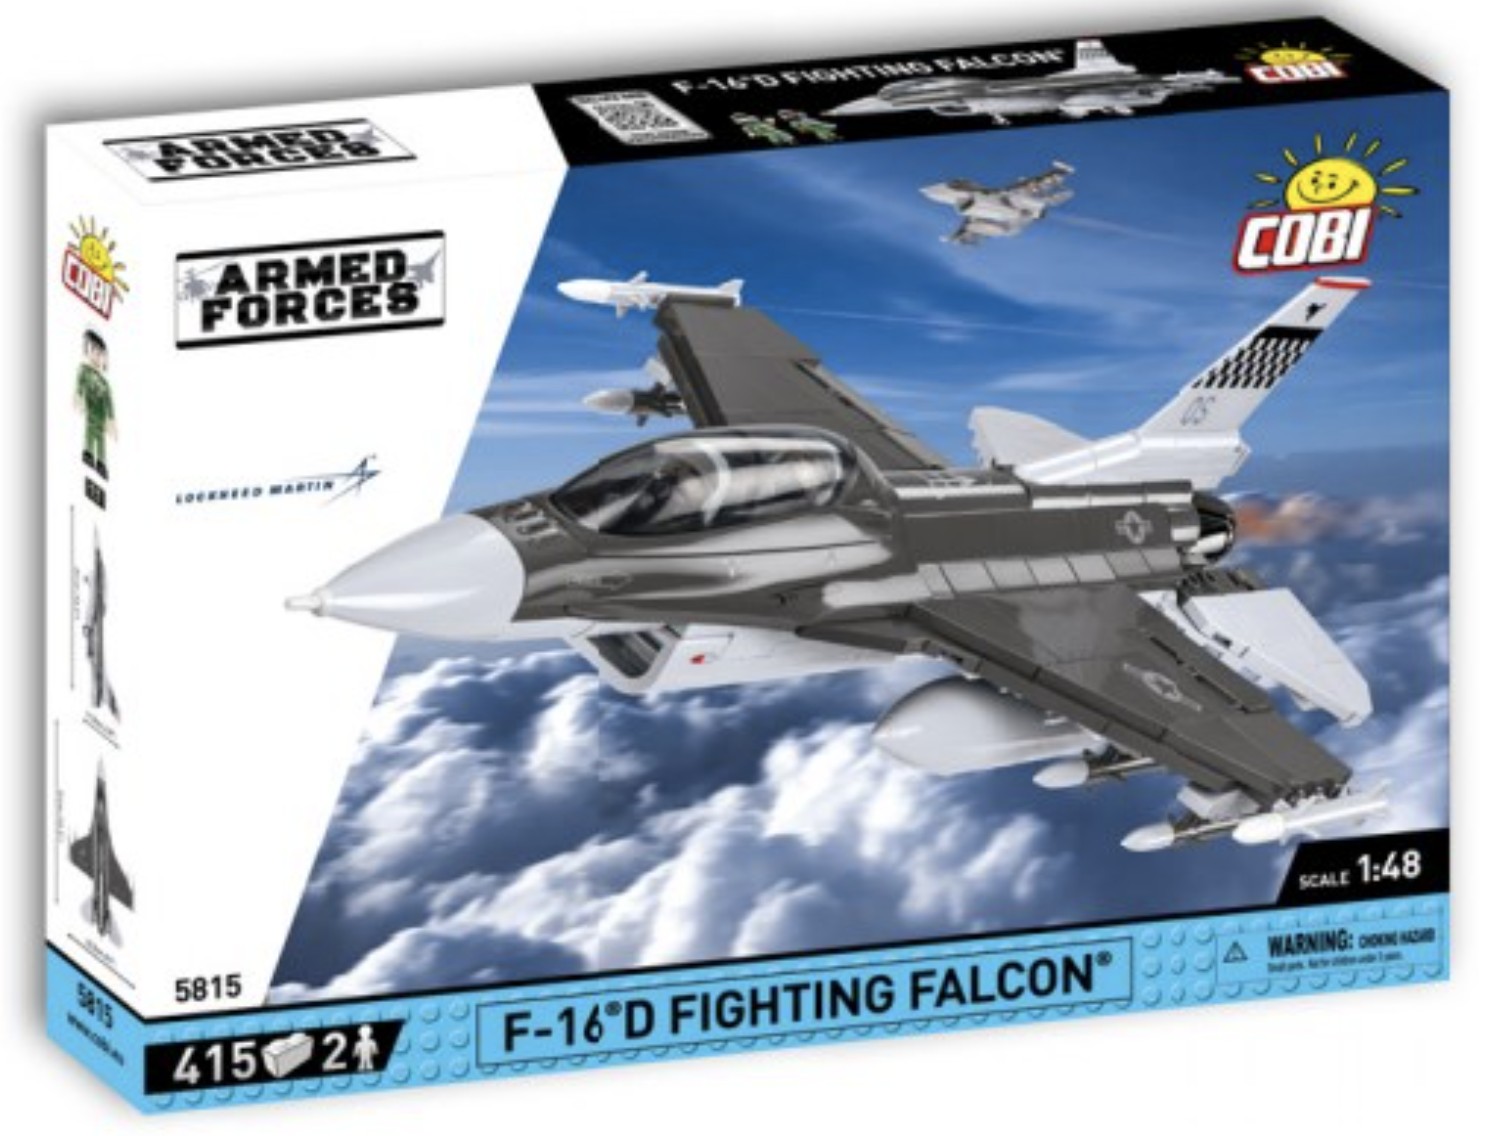 5815 - F-16D Fighting Falcon